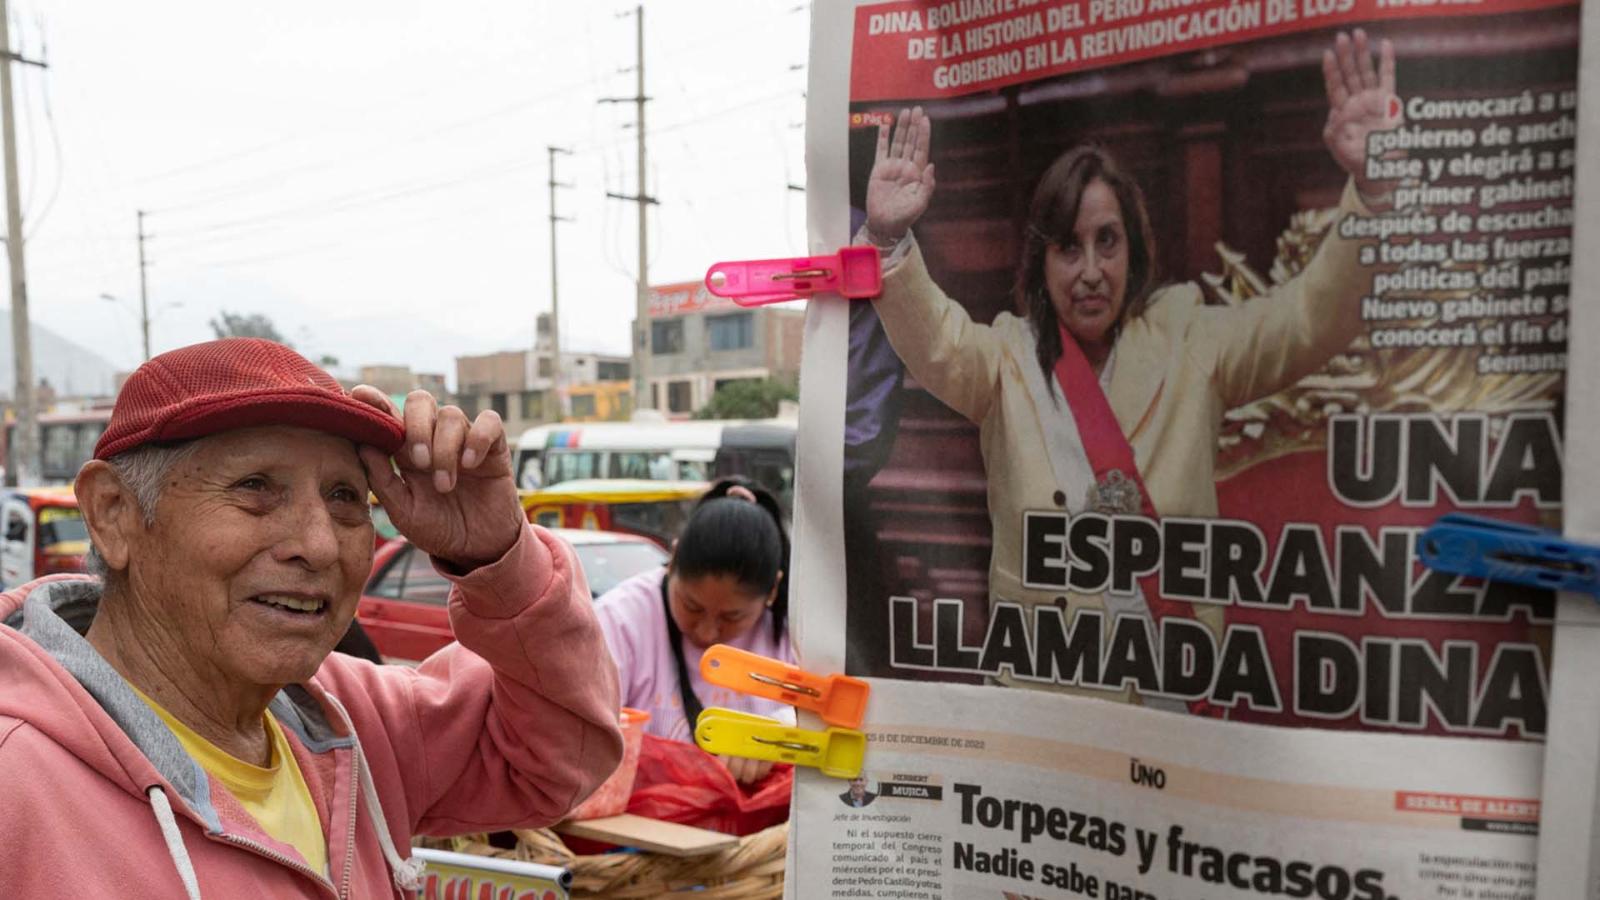 Peru’s ex-president faces justice